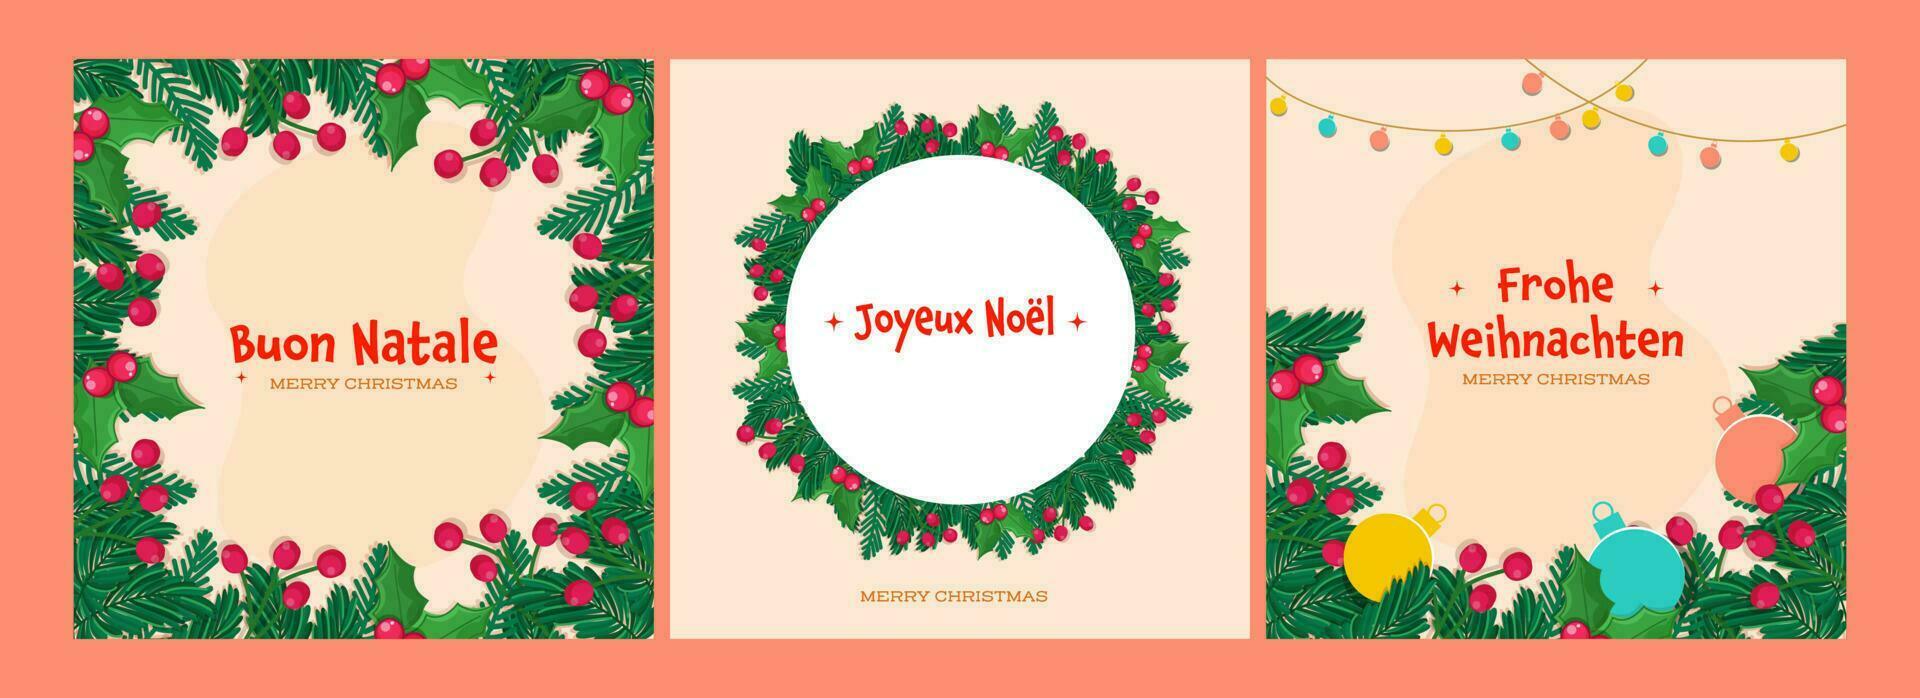 sociaal media berichten versierd met pijnboom bladeren, bessen, kerstballen en vrolijk Kerstmis doopvont in drie types taal. vector